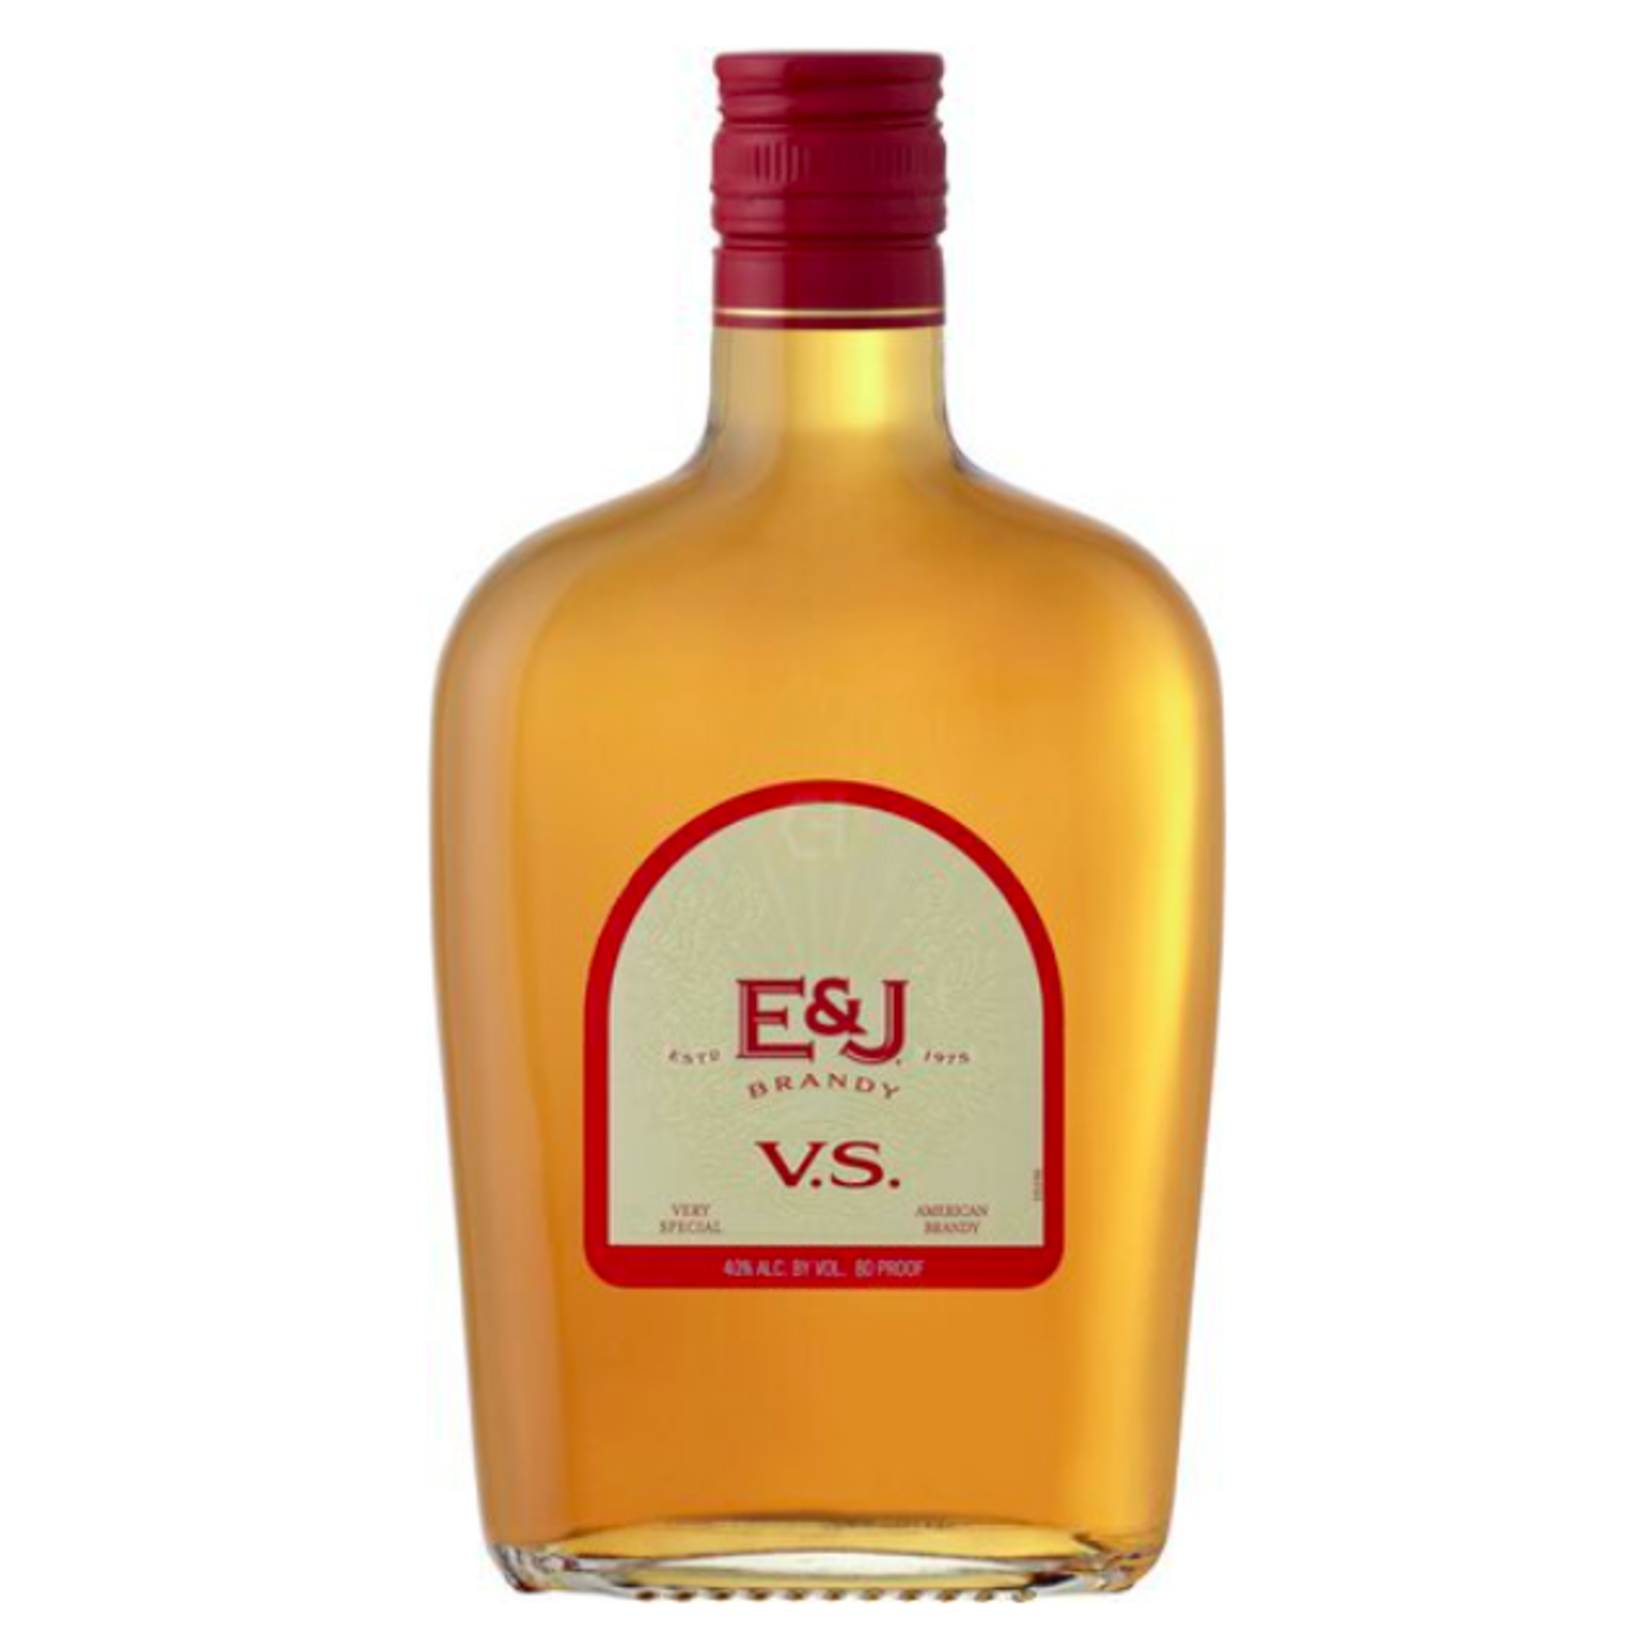 E & J, VS Brandy 375ml (Half Bottle)